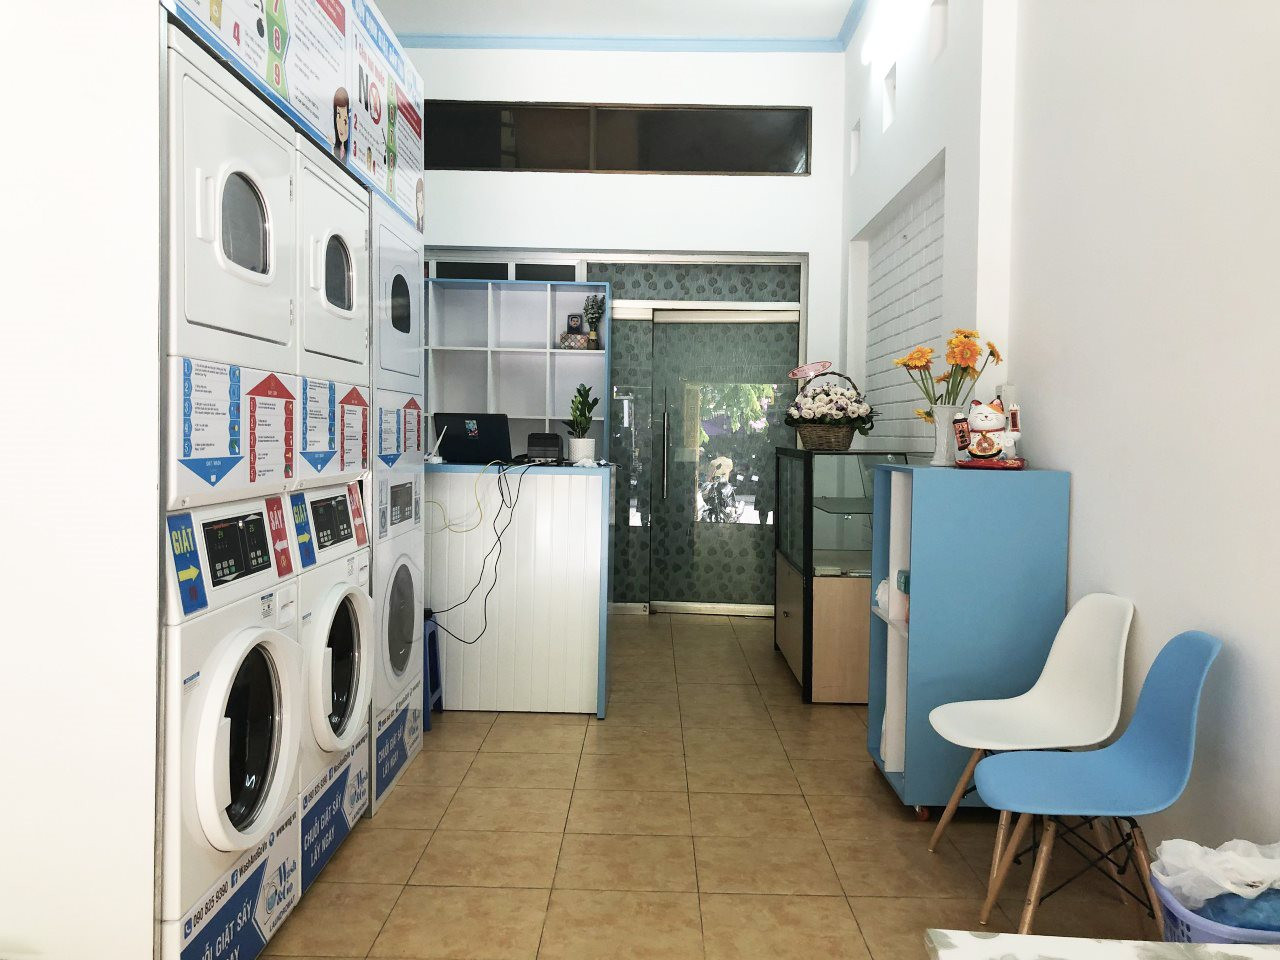 “Ông lớn giặt sấy công nghiệp” Alliance Laundry Systems gia nhập thị trường Việt Nam, sẽ là đối thủ hay đối tác của Joins Pro – Masan? - Ảnh 5.